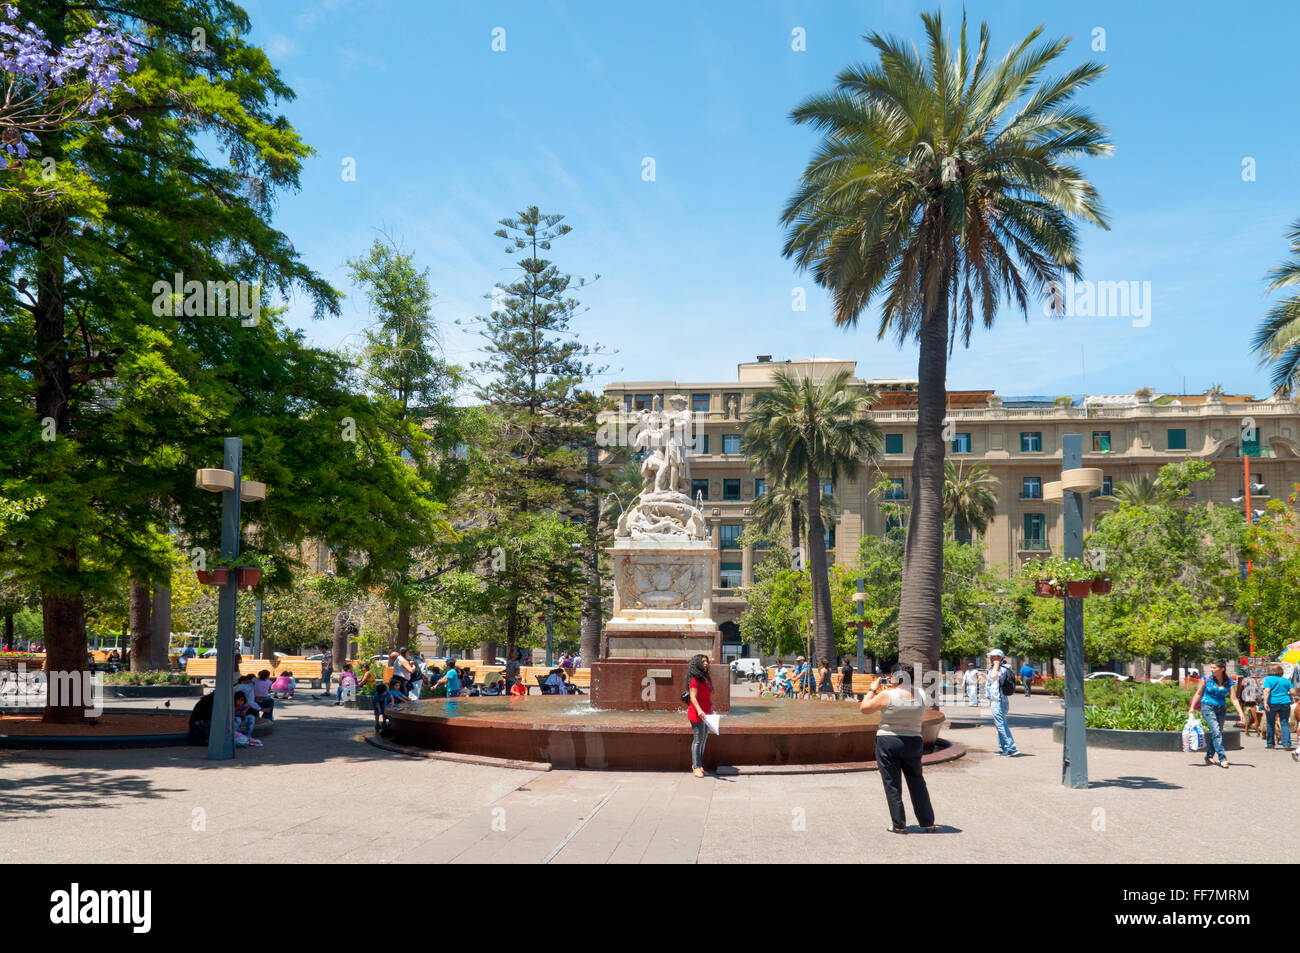 Plaza de Armas, la place principale de Santiago du Chili le dimanche après-midi quand les gens sont au repos sur la place. Banque D'Images